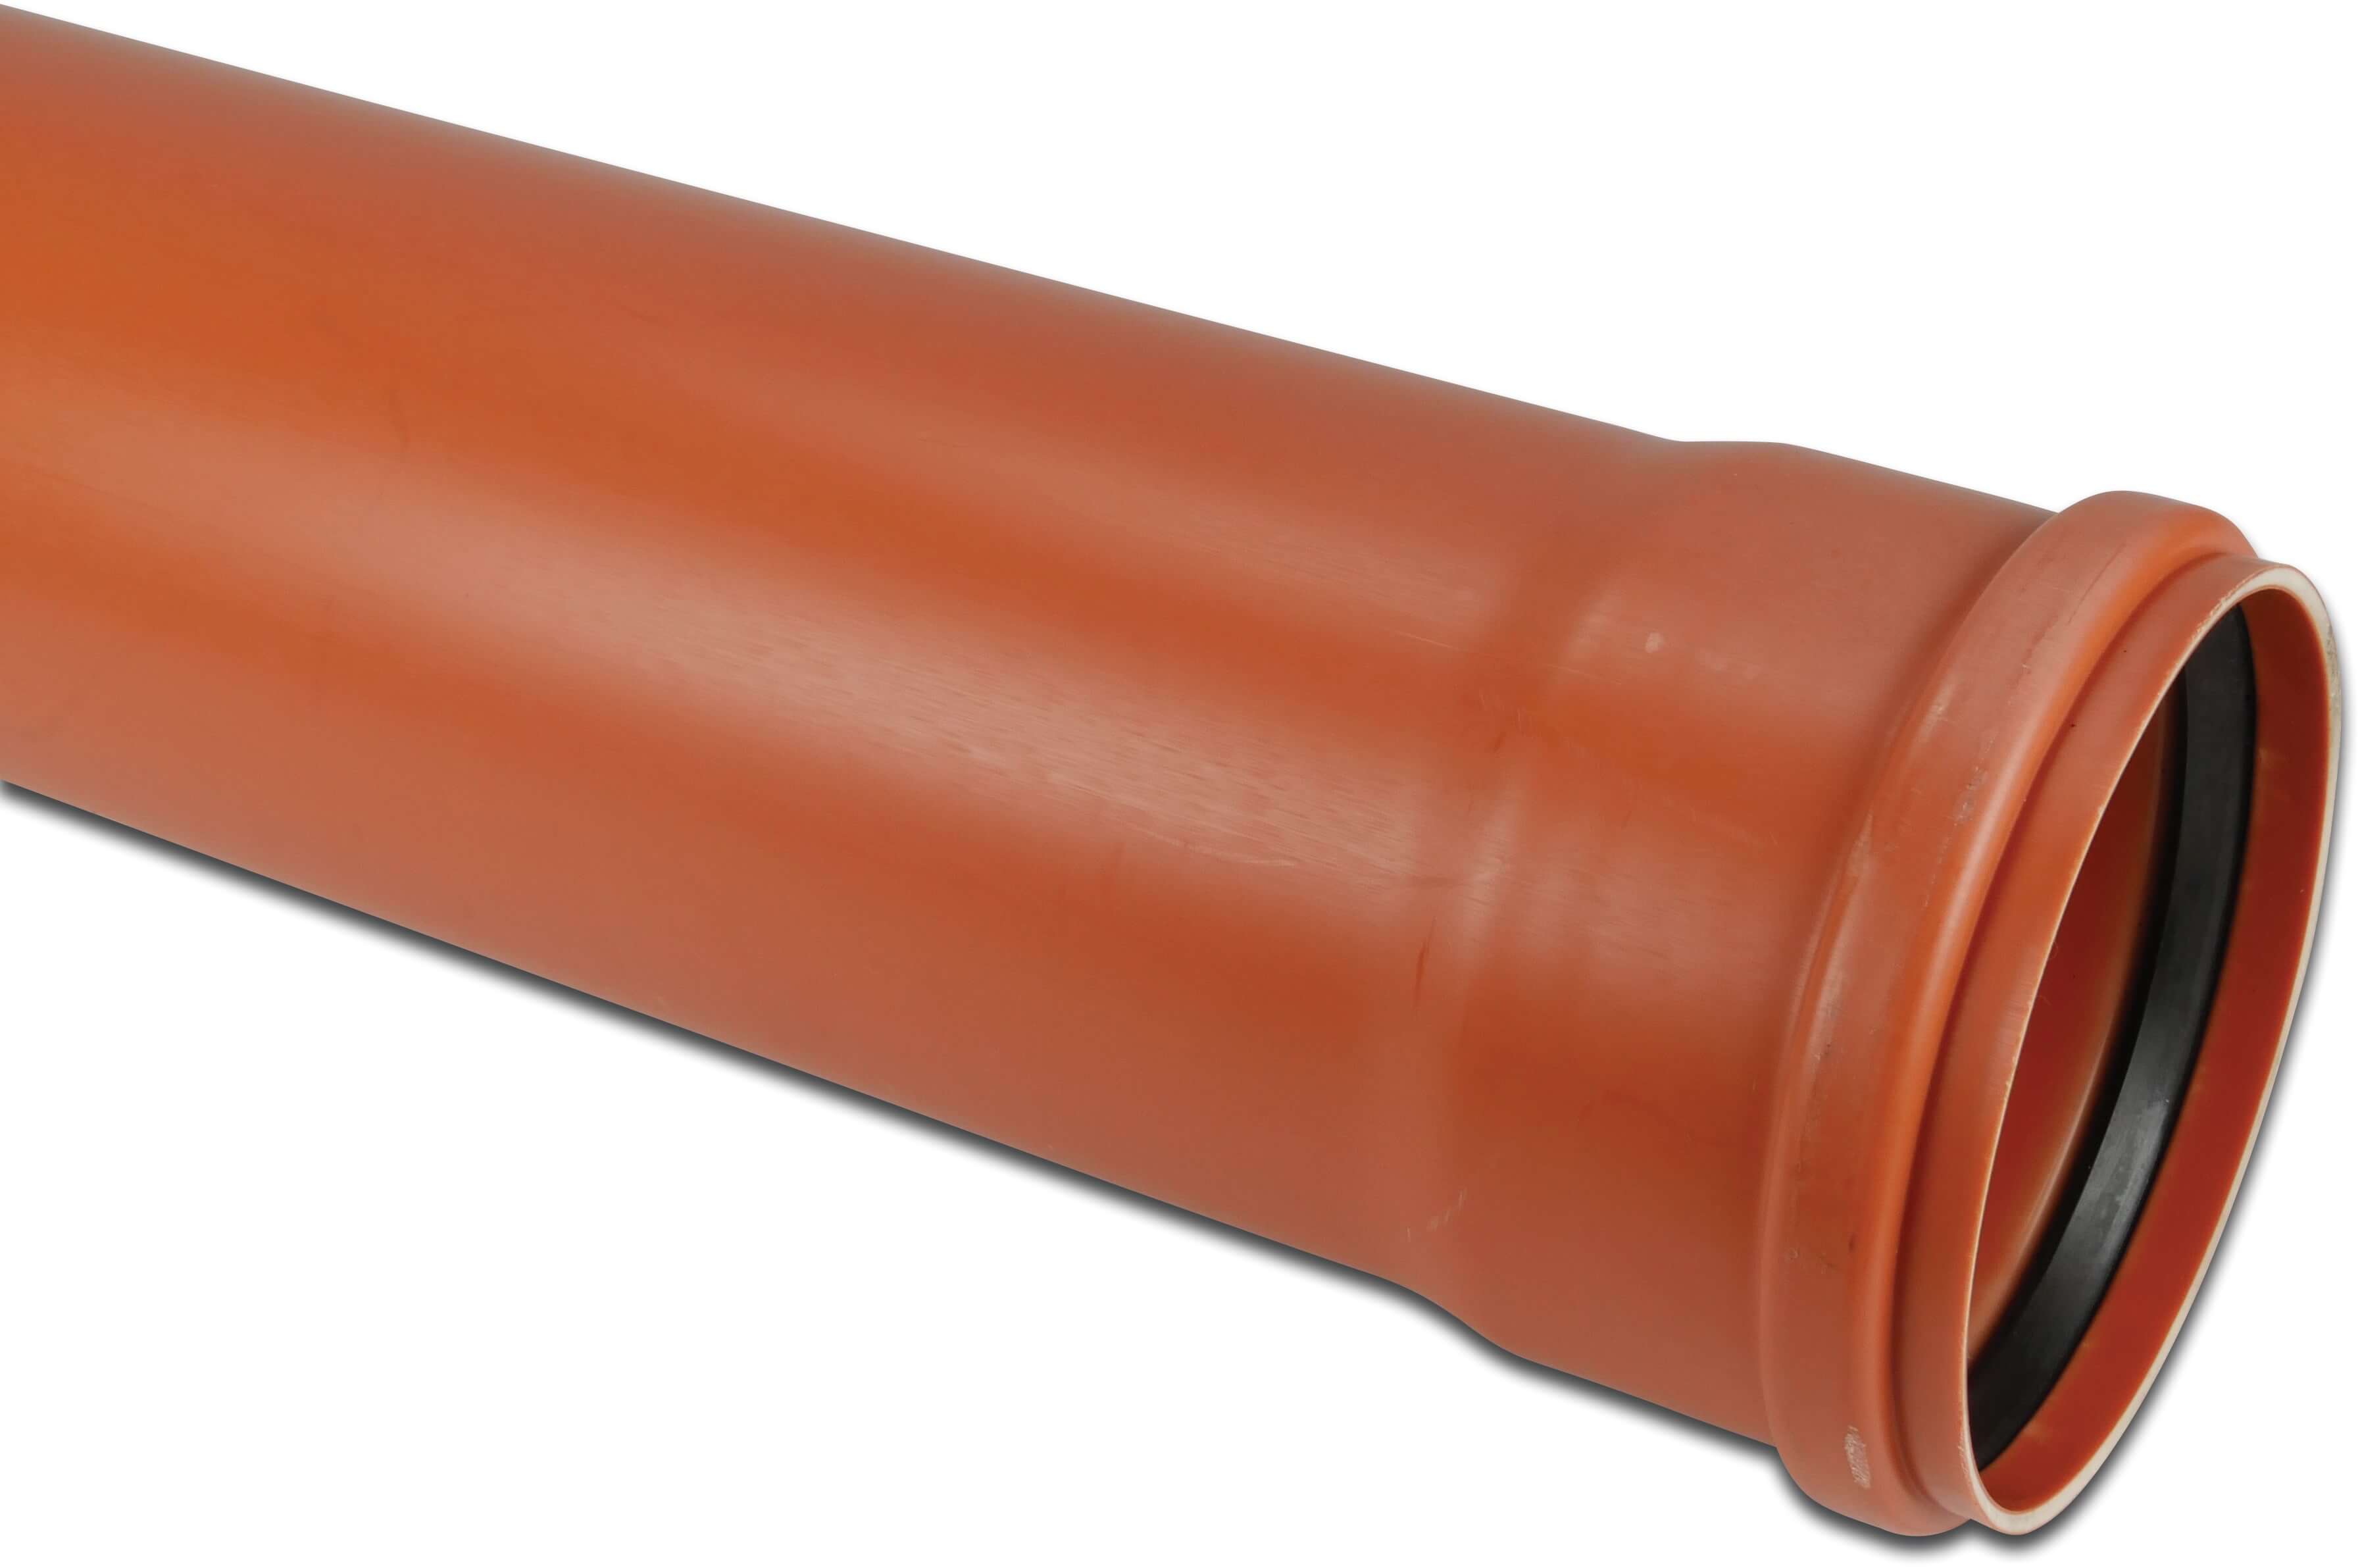 Rura kanalizacyjna PVC-U 110 mm x 3,2 mm SN4 pierścień uszczelniający x gładkie czerwono-brązowy 0,5m